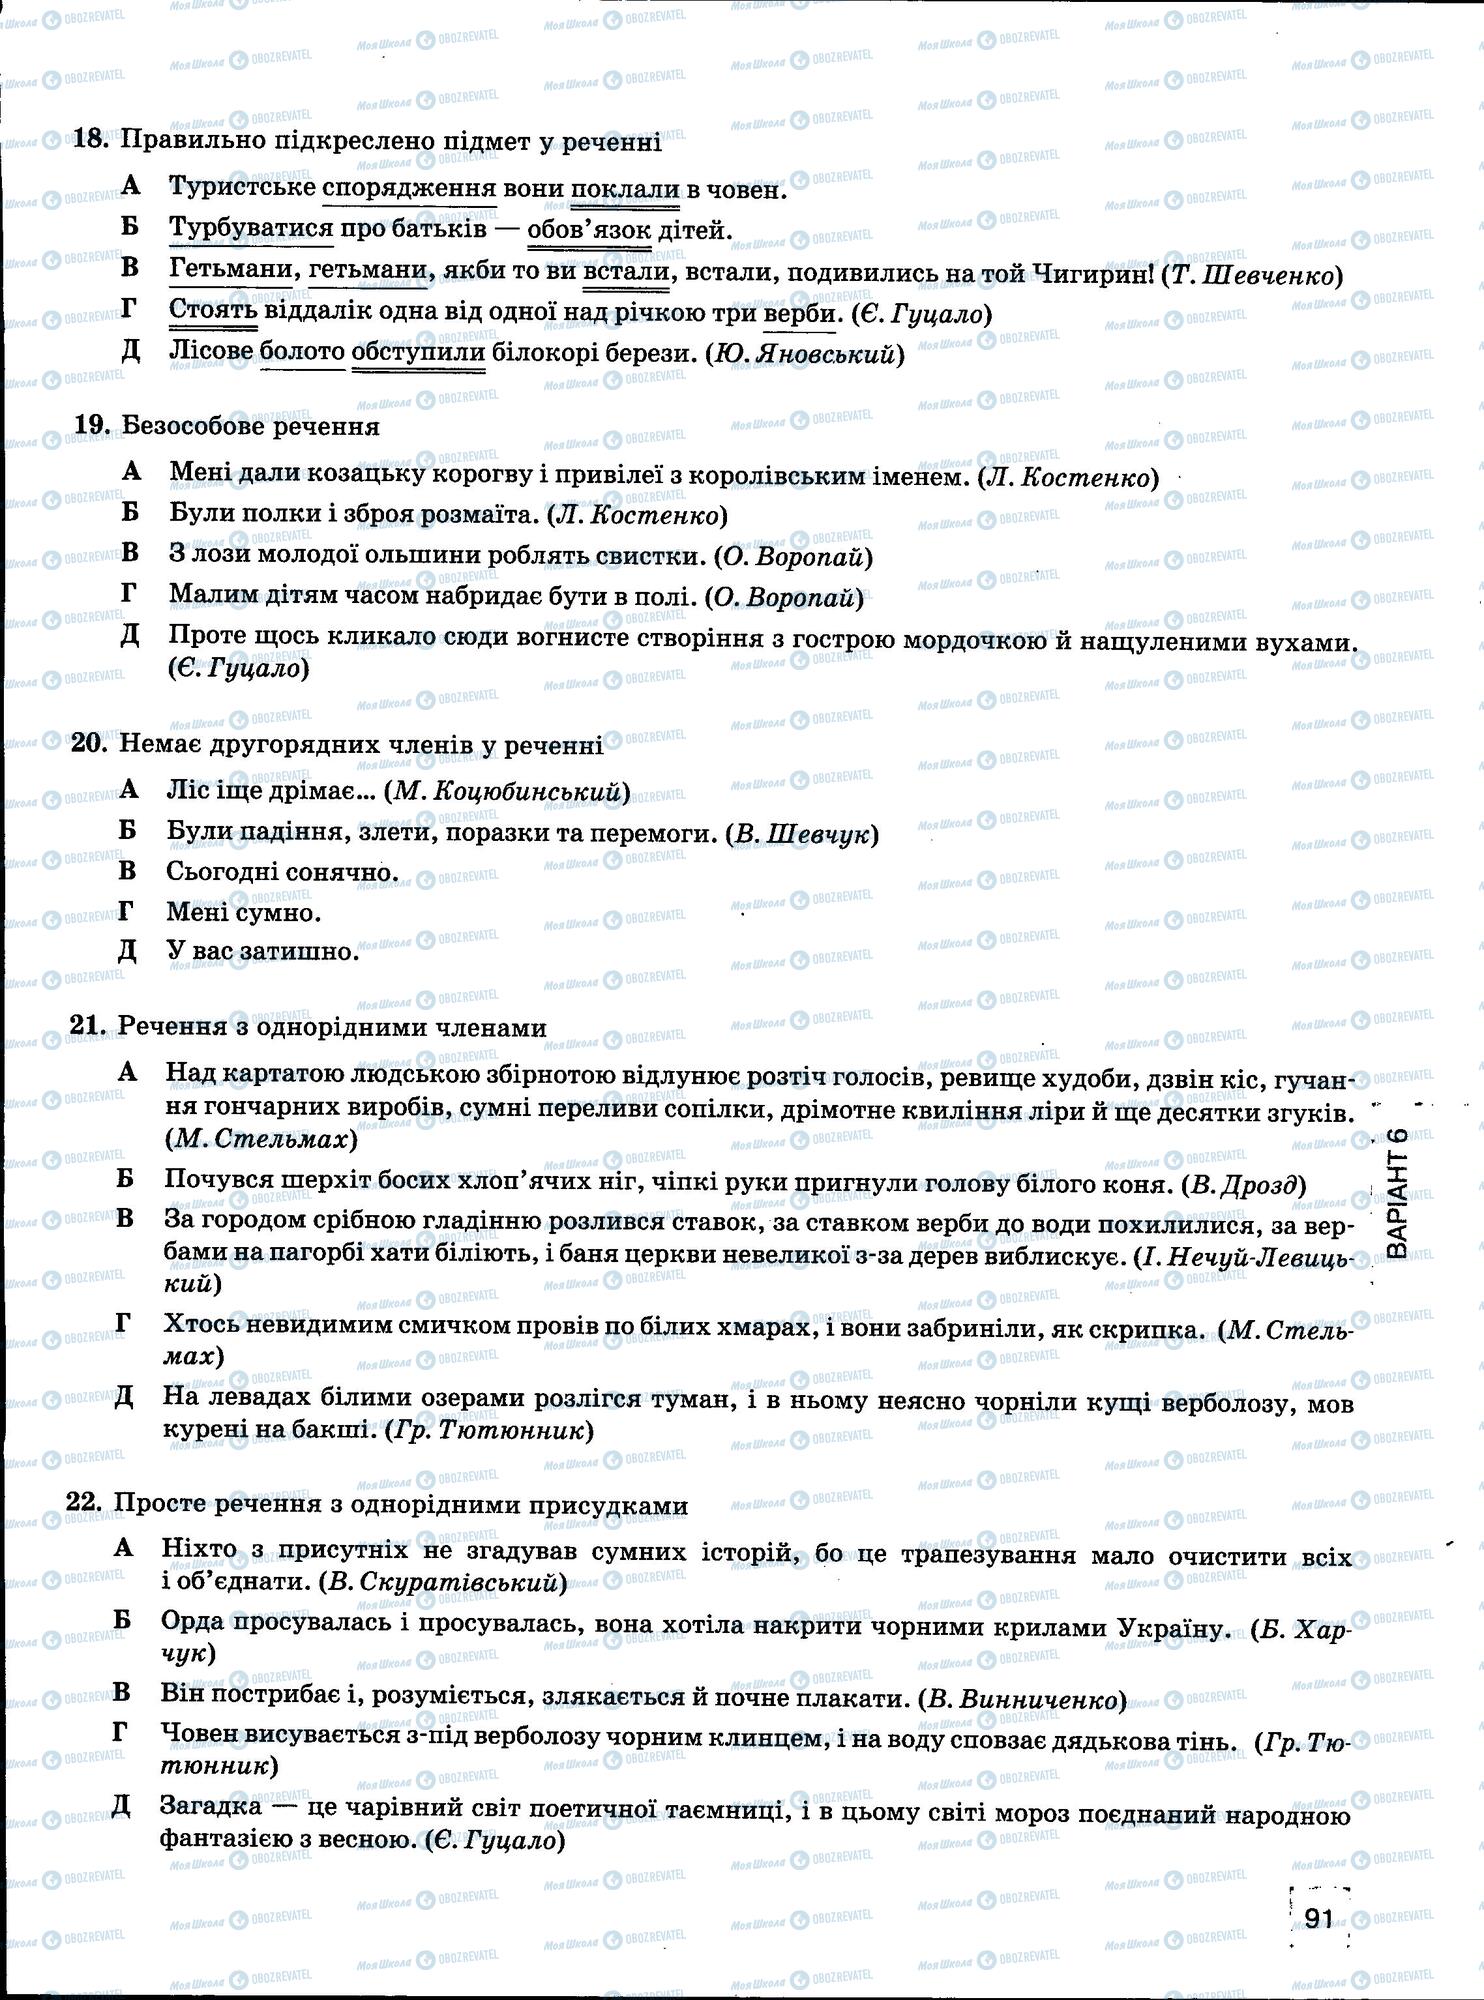 ЗНО Укр мова 11 класс страница 91